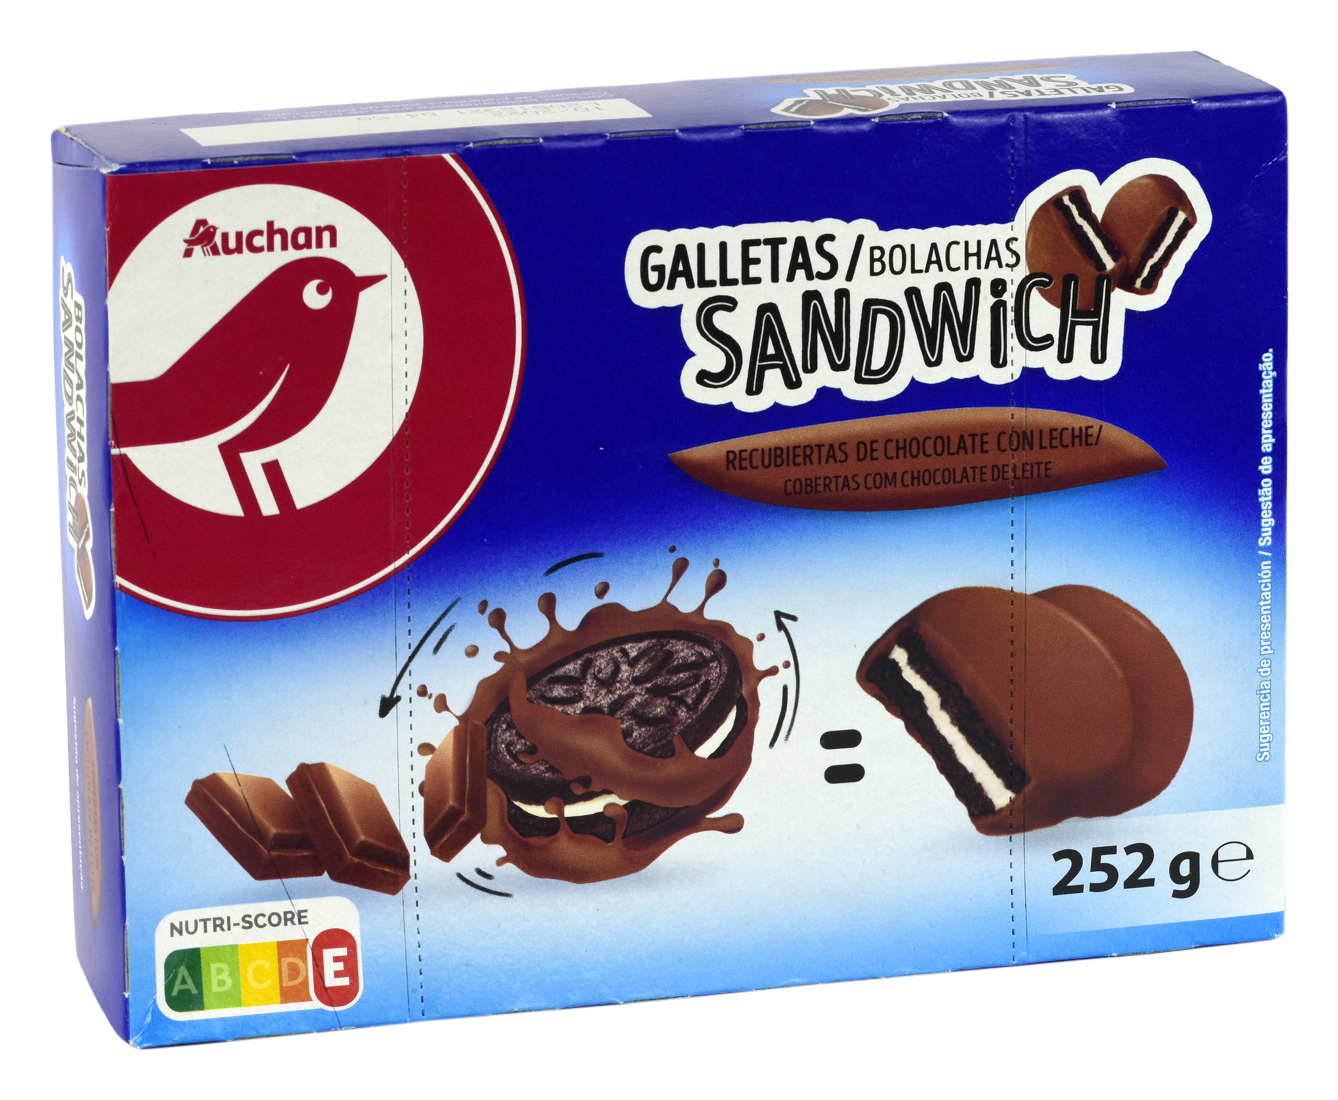 GALLETAS SANDWICH RECUBIERTAS DE CHOCOLATE CON LECHE